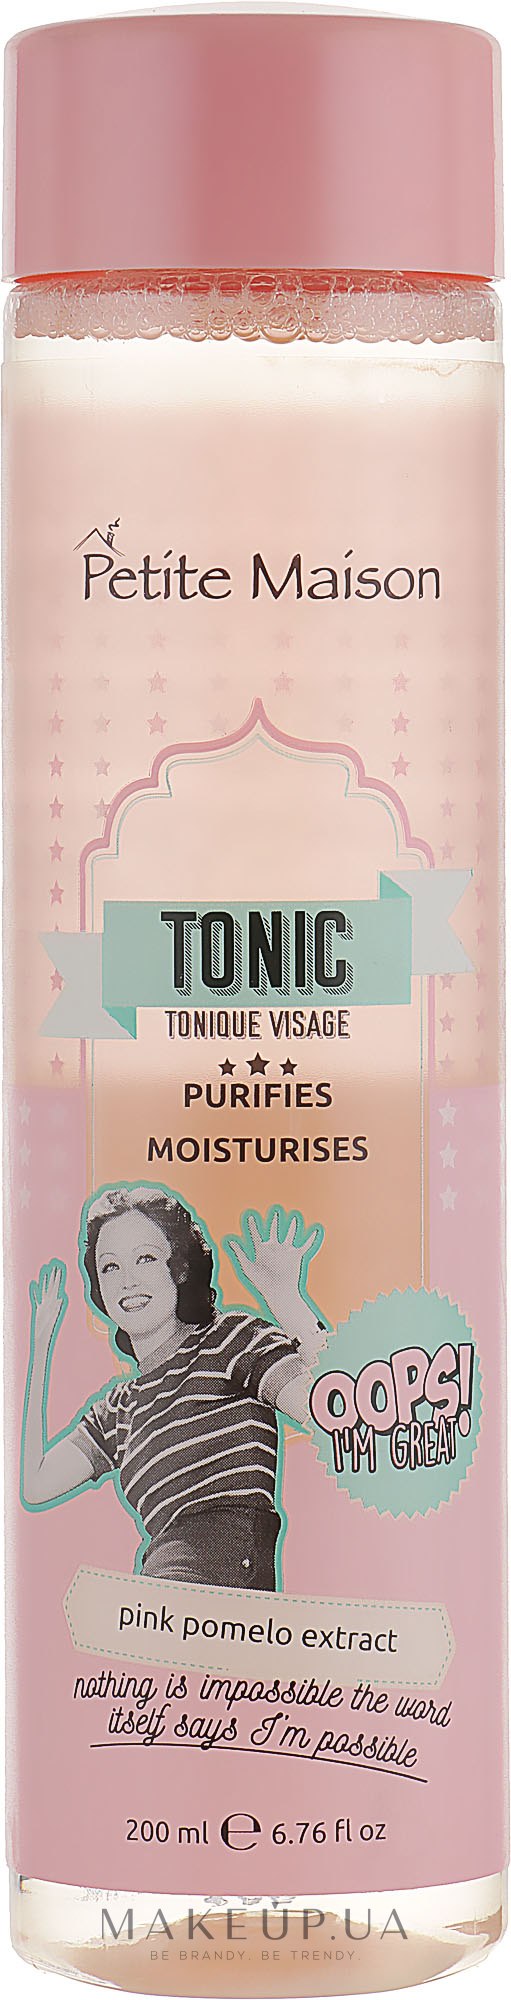 Очищающий тоник для лица с экстрактом розового помело - Petite Maison Tonic Visage — фото 200ml